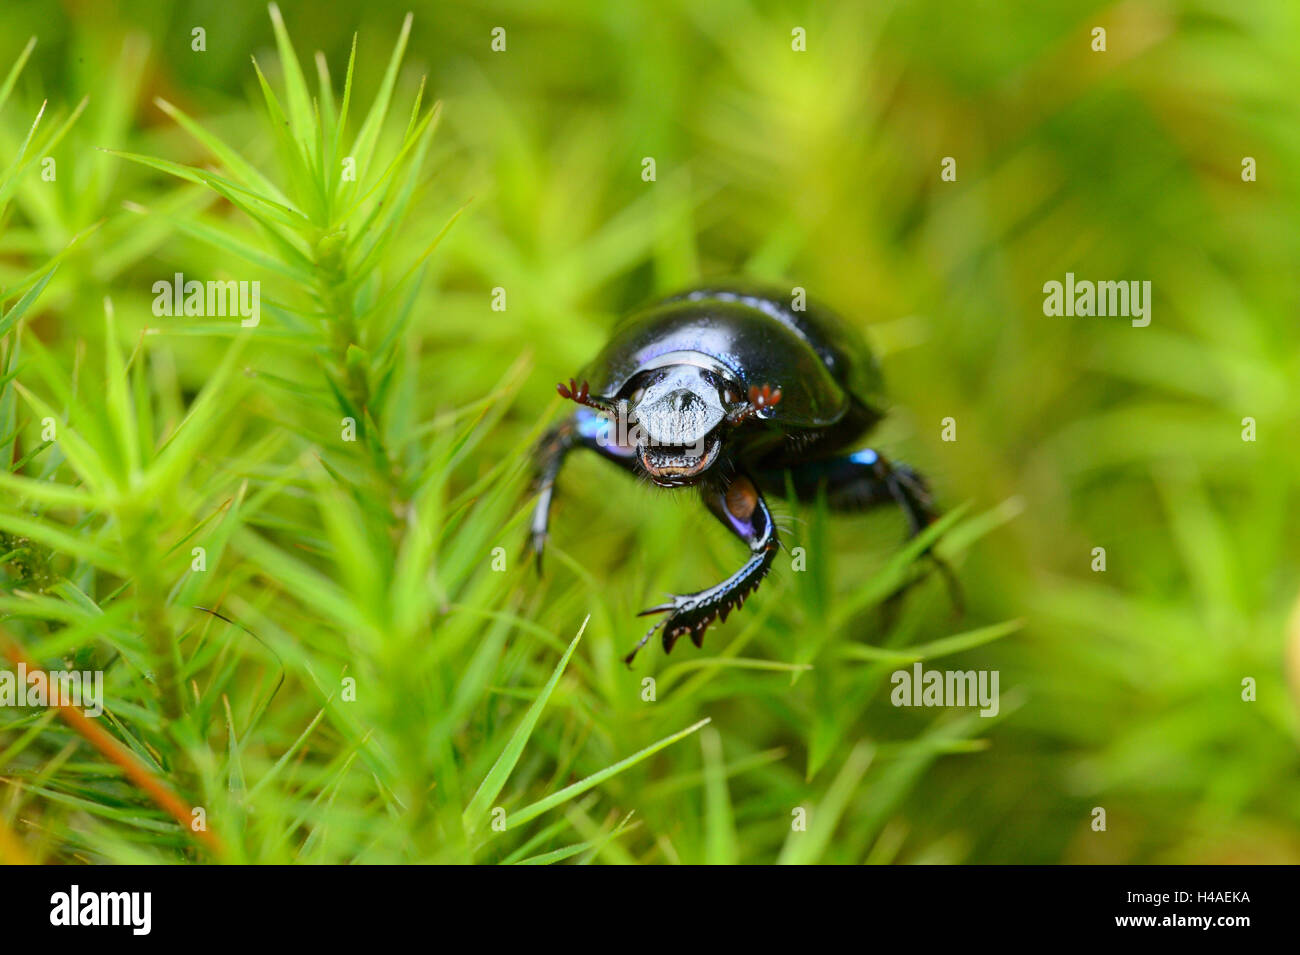 Escarabajos, Anoplotrupes stercorosus, musgo, frontalmente, mirando a la cámara, Foto de stock